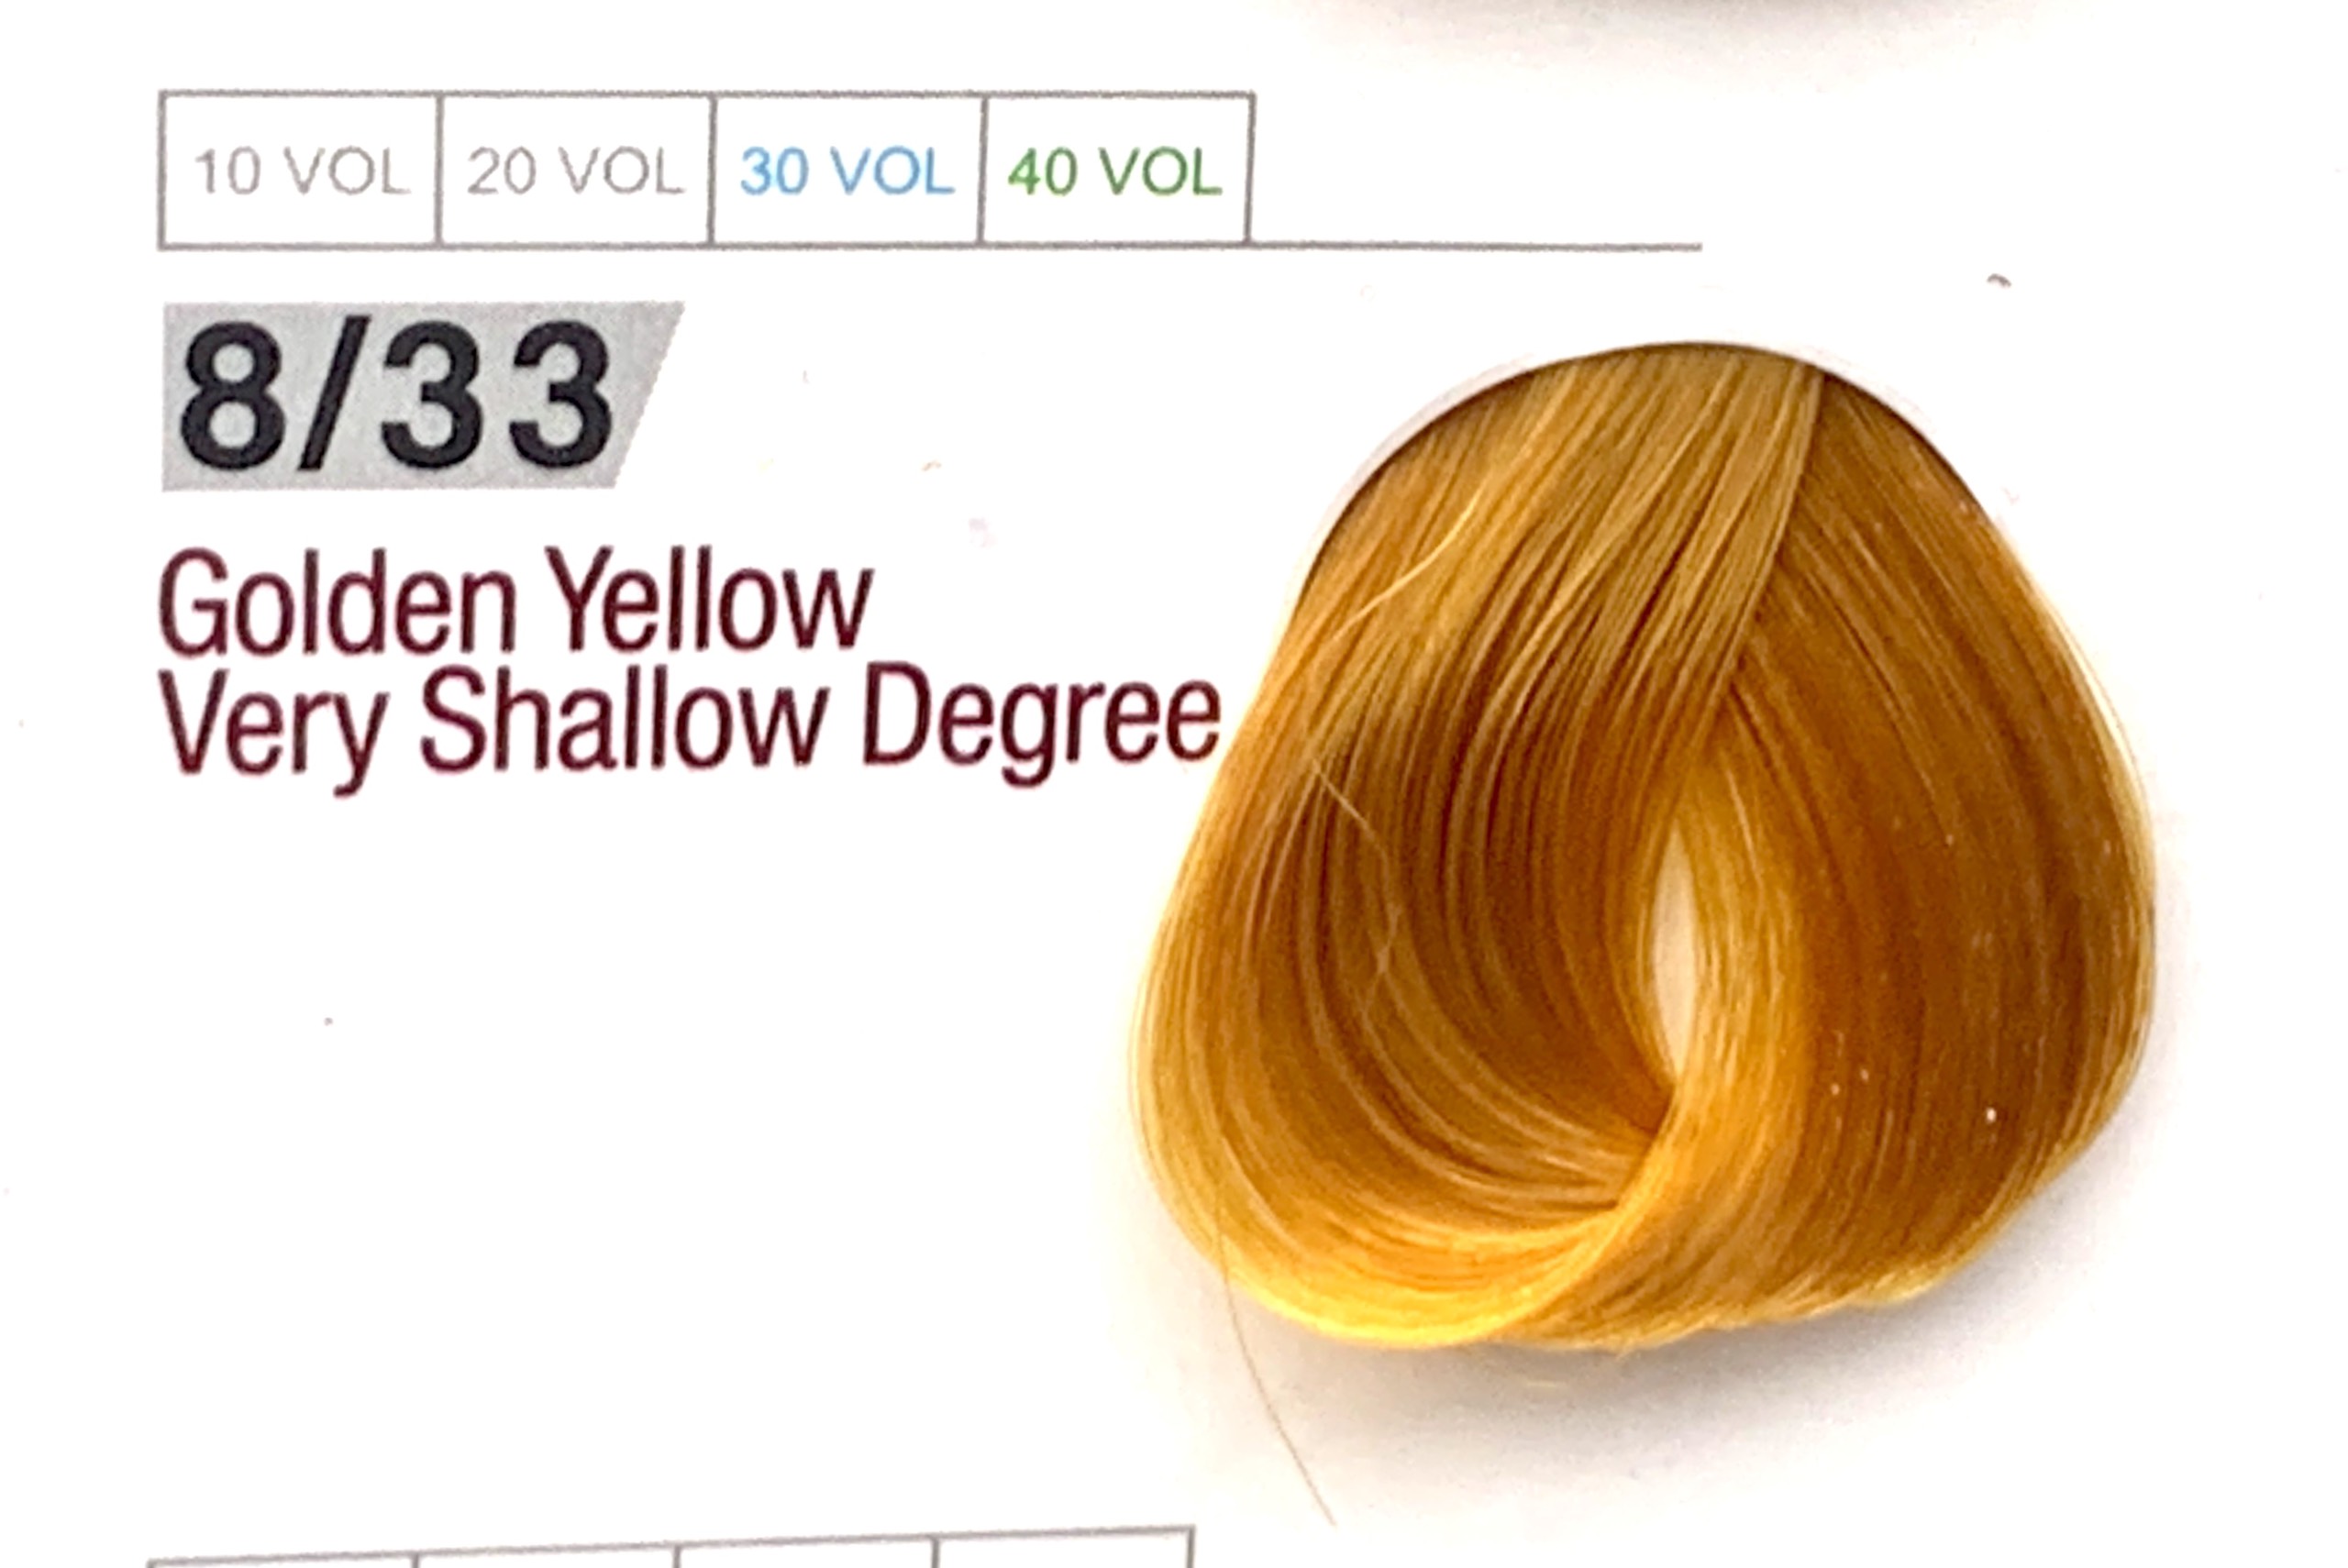 Salamy Golden Yellow là sự lựa chọn hoàn hảo cho những ai muốn sở hữu mái tóc vàng óng, tươi sáng và quyến rũ. Với công thức không chứa các chất độc hại, Salamy Golden Yellow giúp nhuộm tóc một cách an toàn và hiệu quả. Hãy xem ngay hình ảnh liên quan đến thuốc nhuộm tóc Salamy Golden Yellow để tìm hiểu thêm về sản phẩm tuyệt vời này nhé!